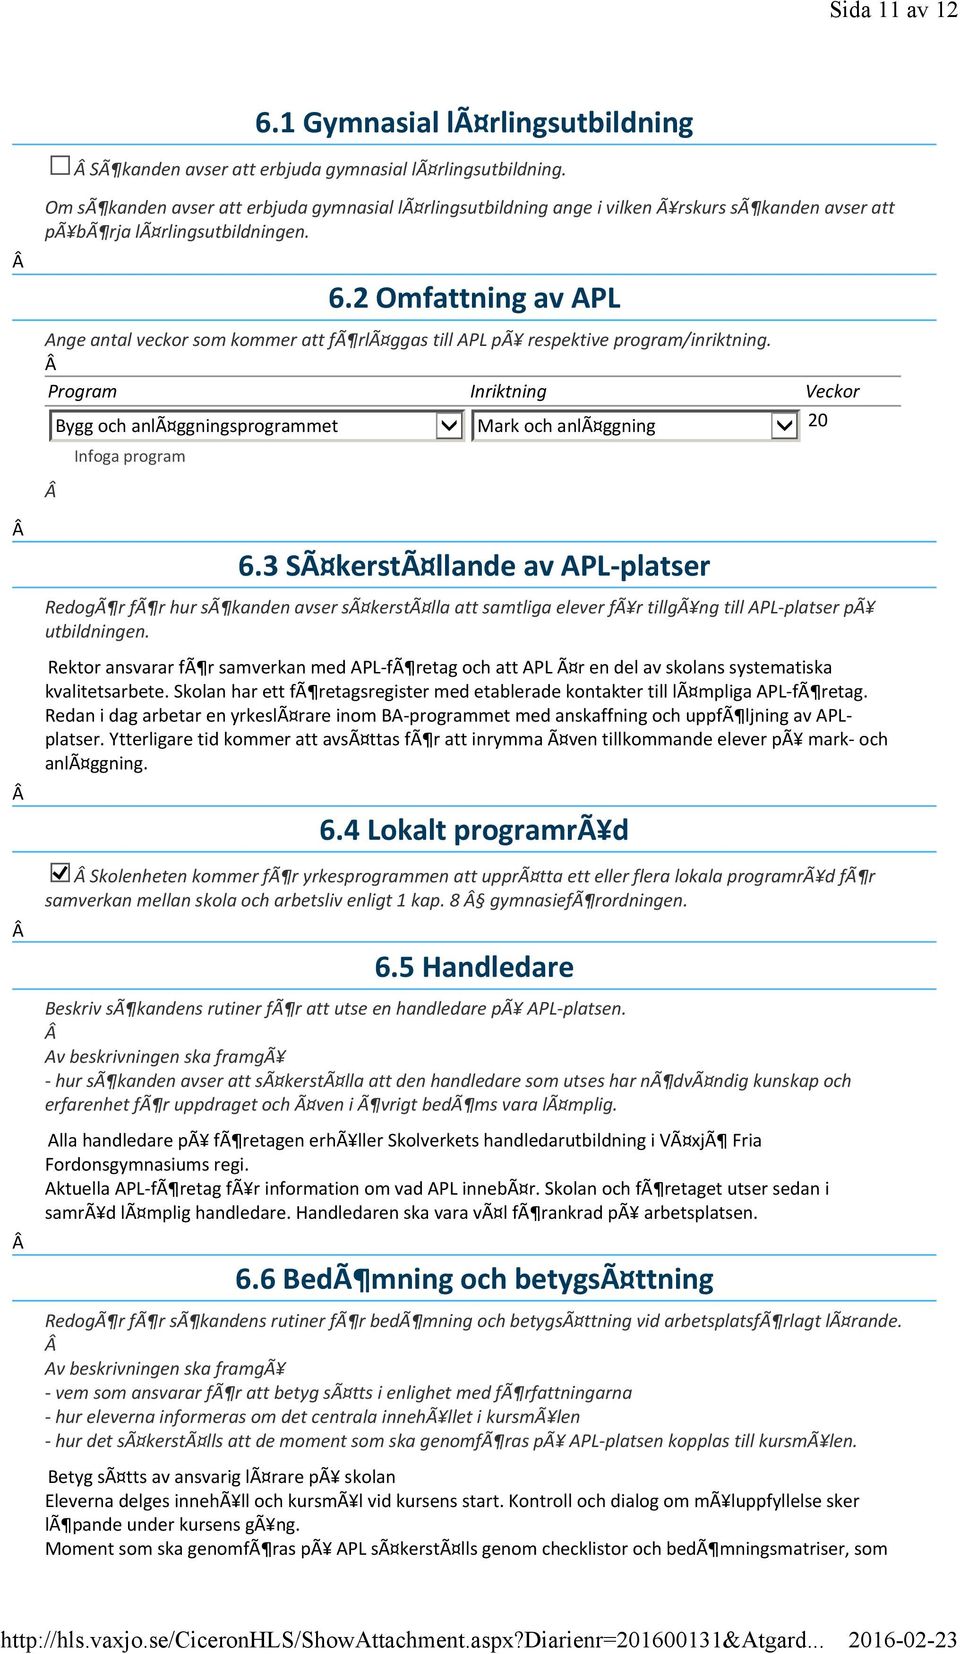 2 Omfattning av APL Ange antal veckor som kommer att fã rlã ggas till APL pã respektive program/inriktning.